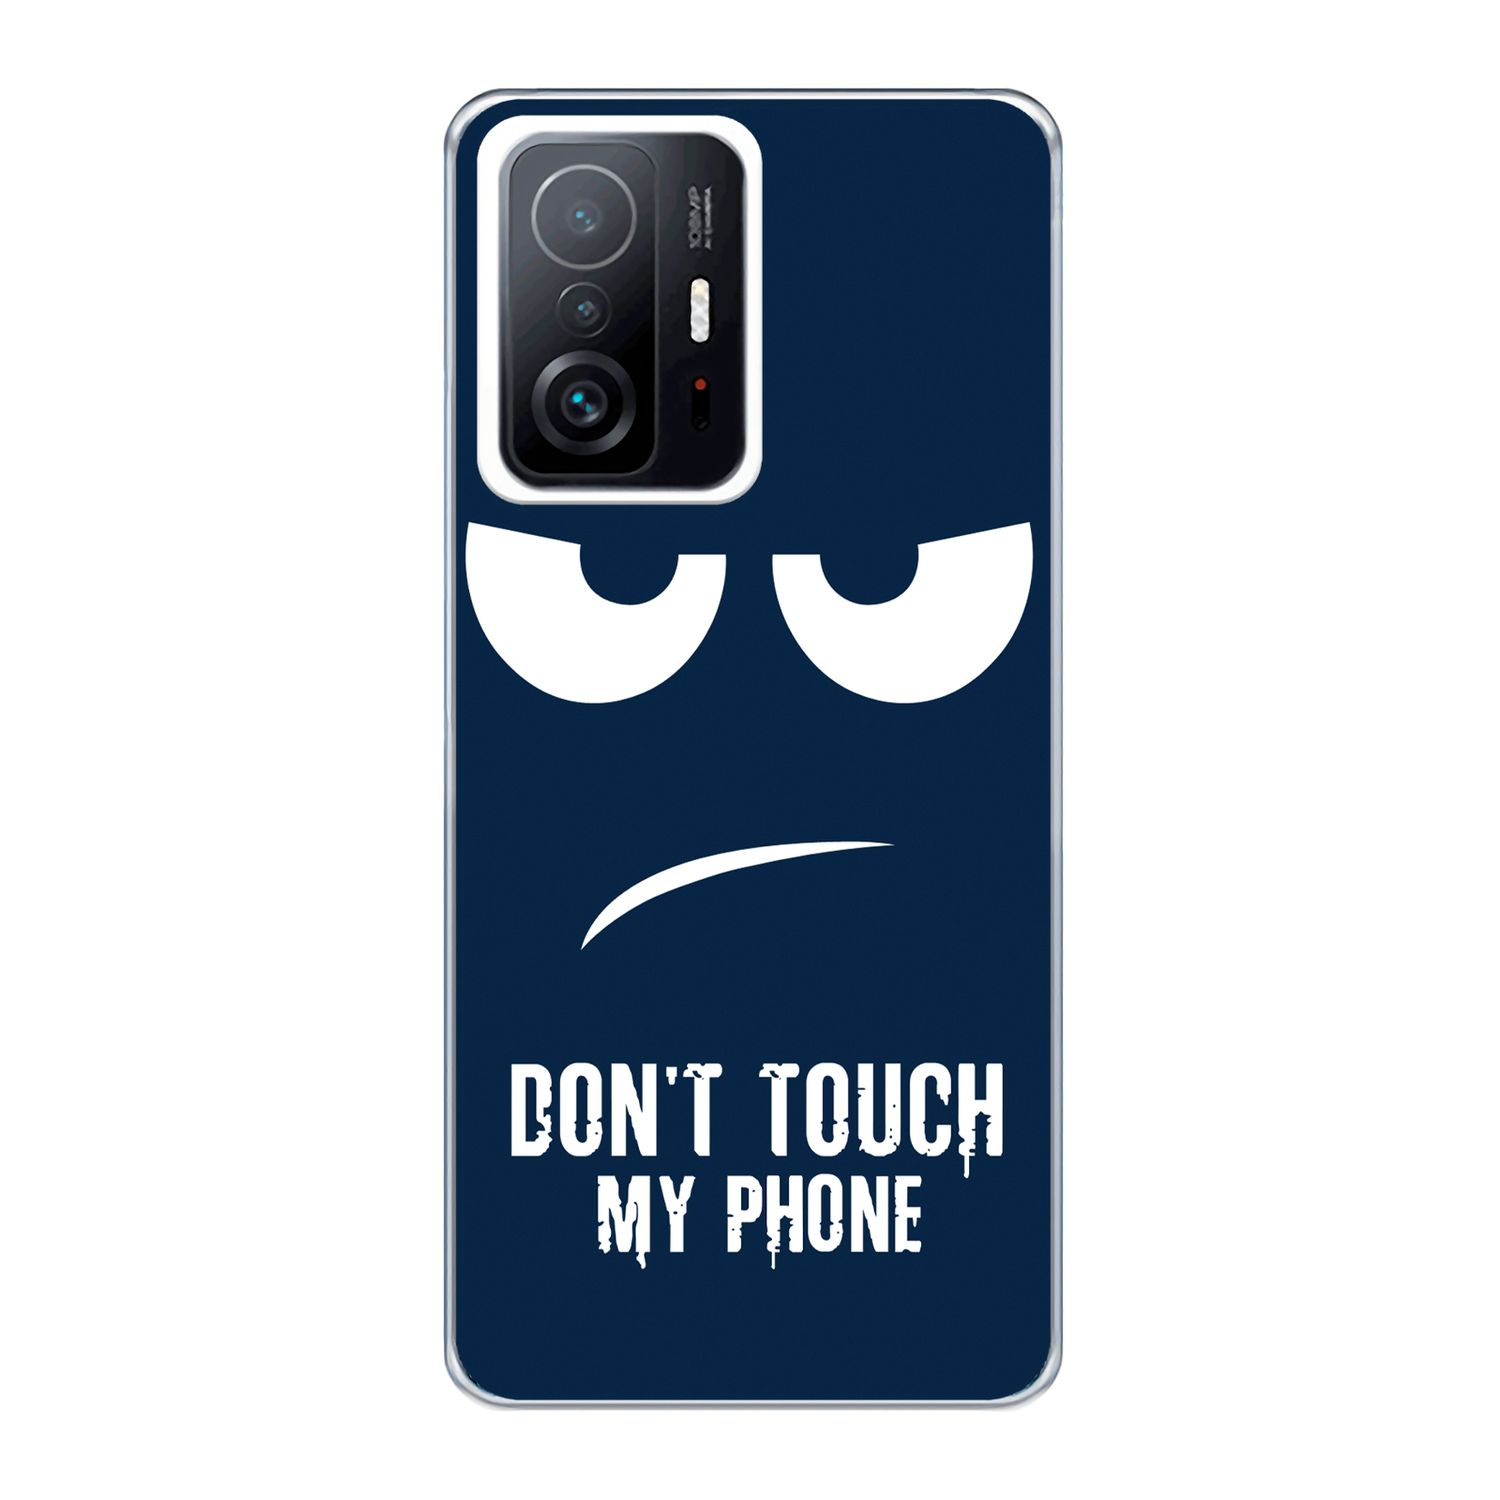 11T Pro, Dont Blau My Backcover, / Phone Xiaomi, Mi 11T KÖNIG Touch Case, DESIGN